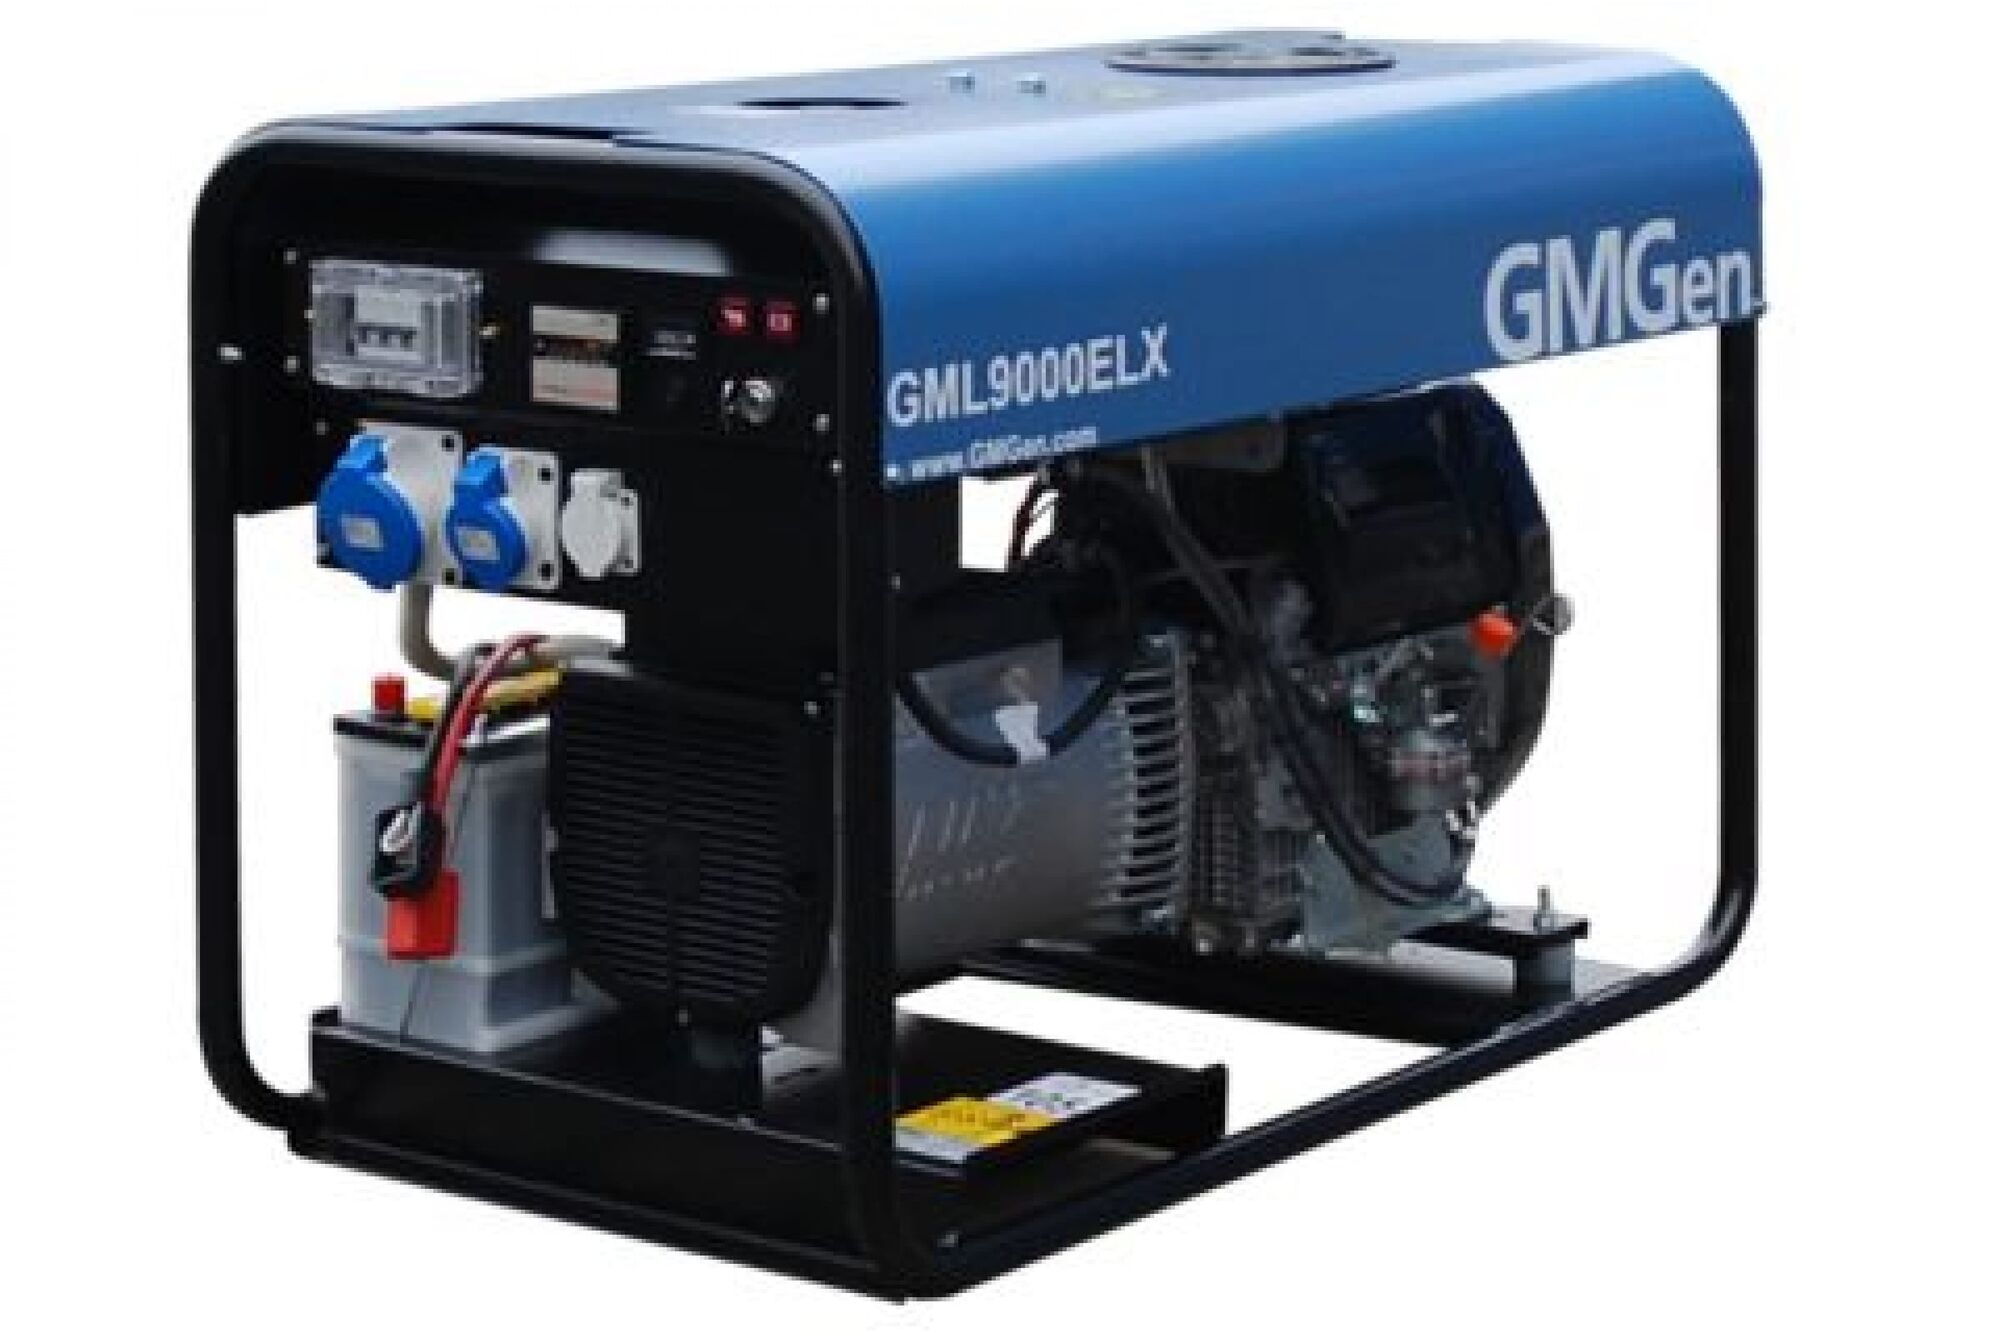 Дизель генератор GMGen Power Systems GML9000ELX 6.4 кВт, 220 В 501863